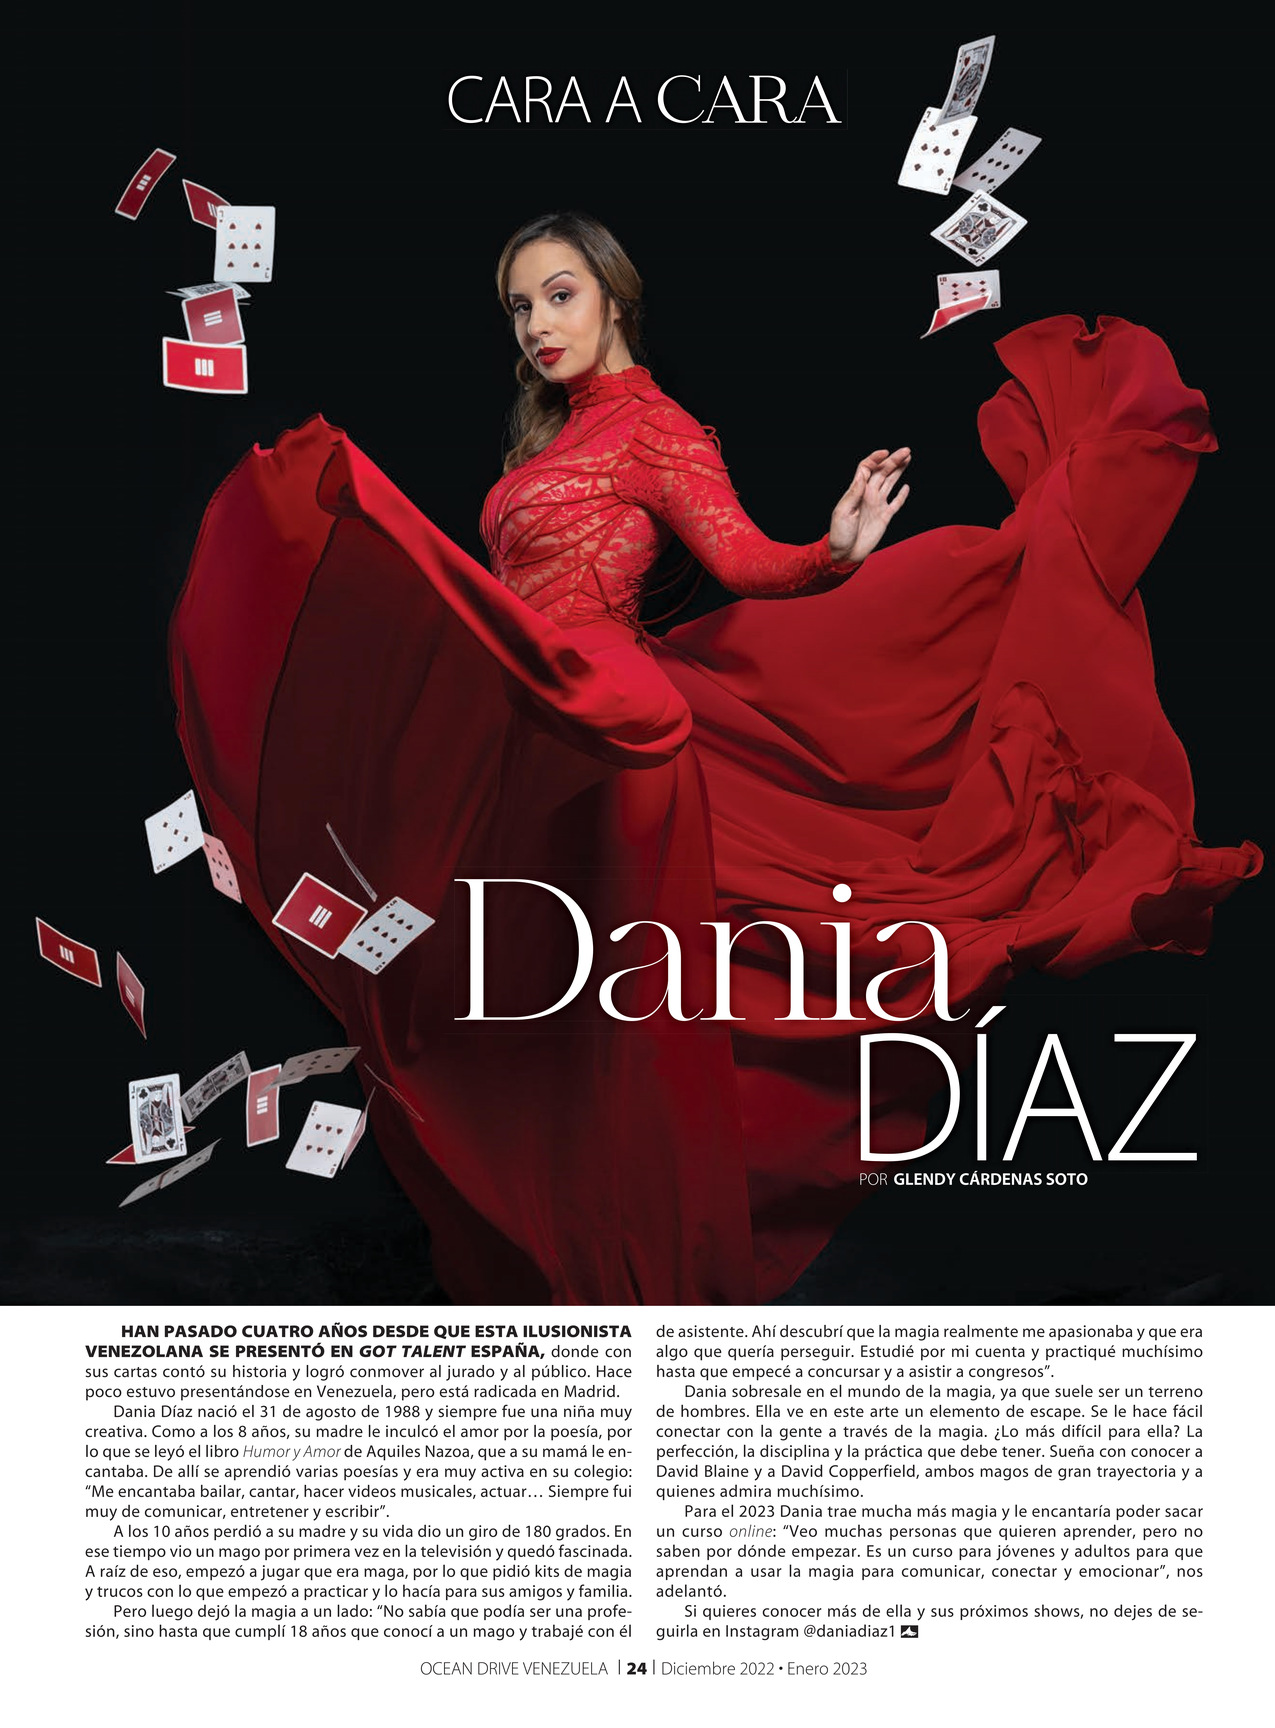 29-REV Cara Cara Dania Diaz